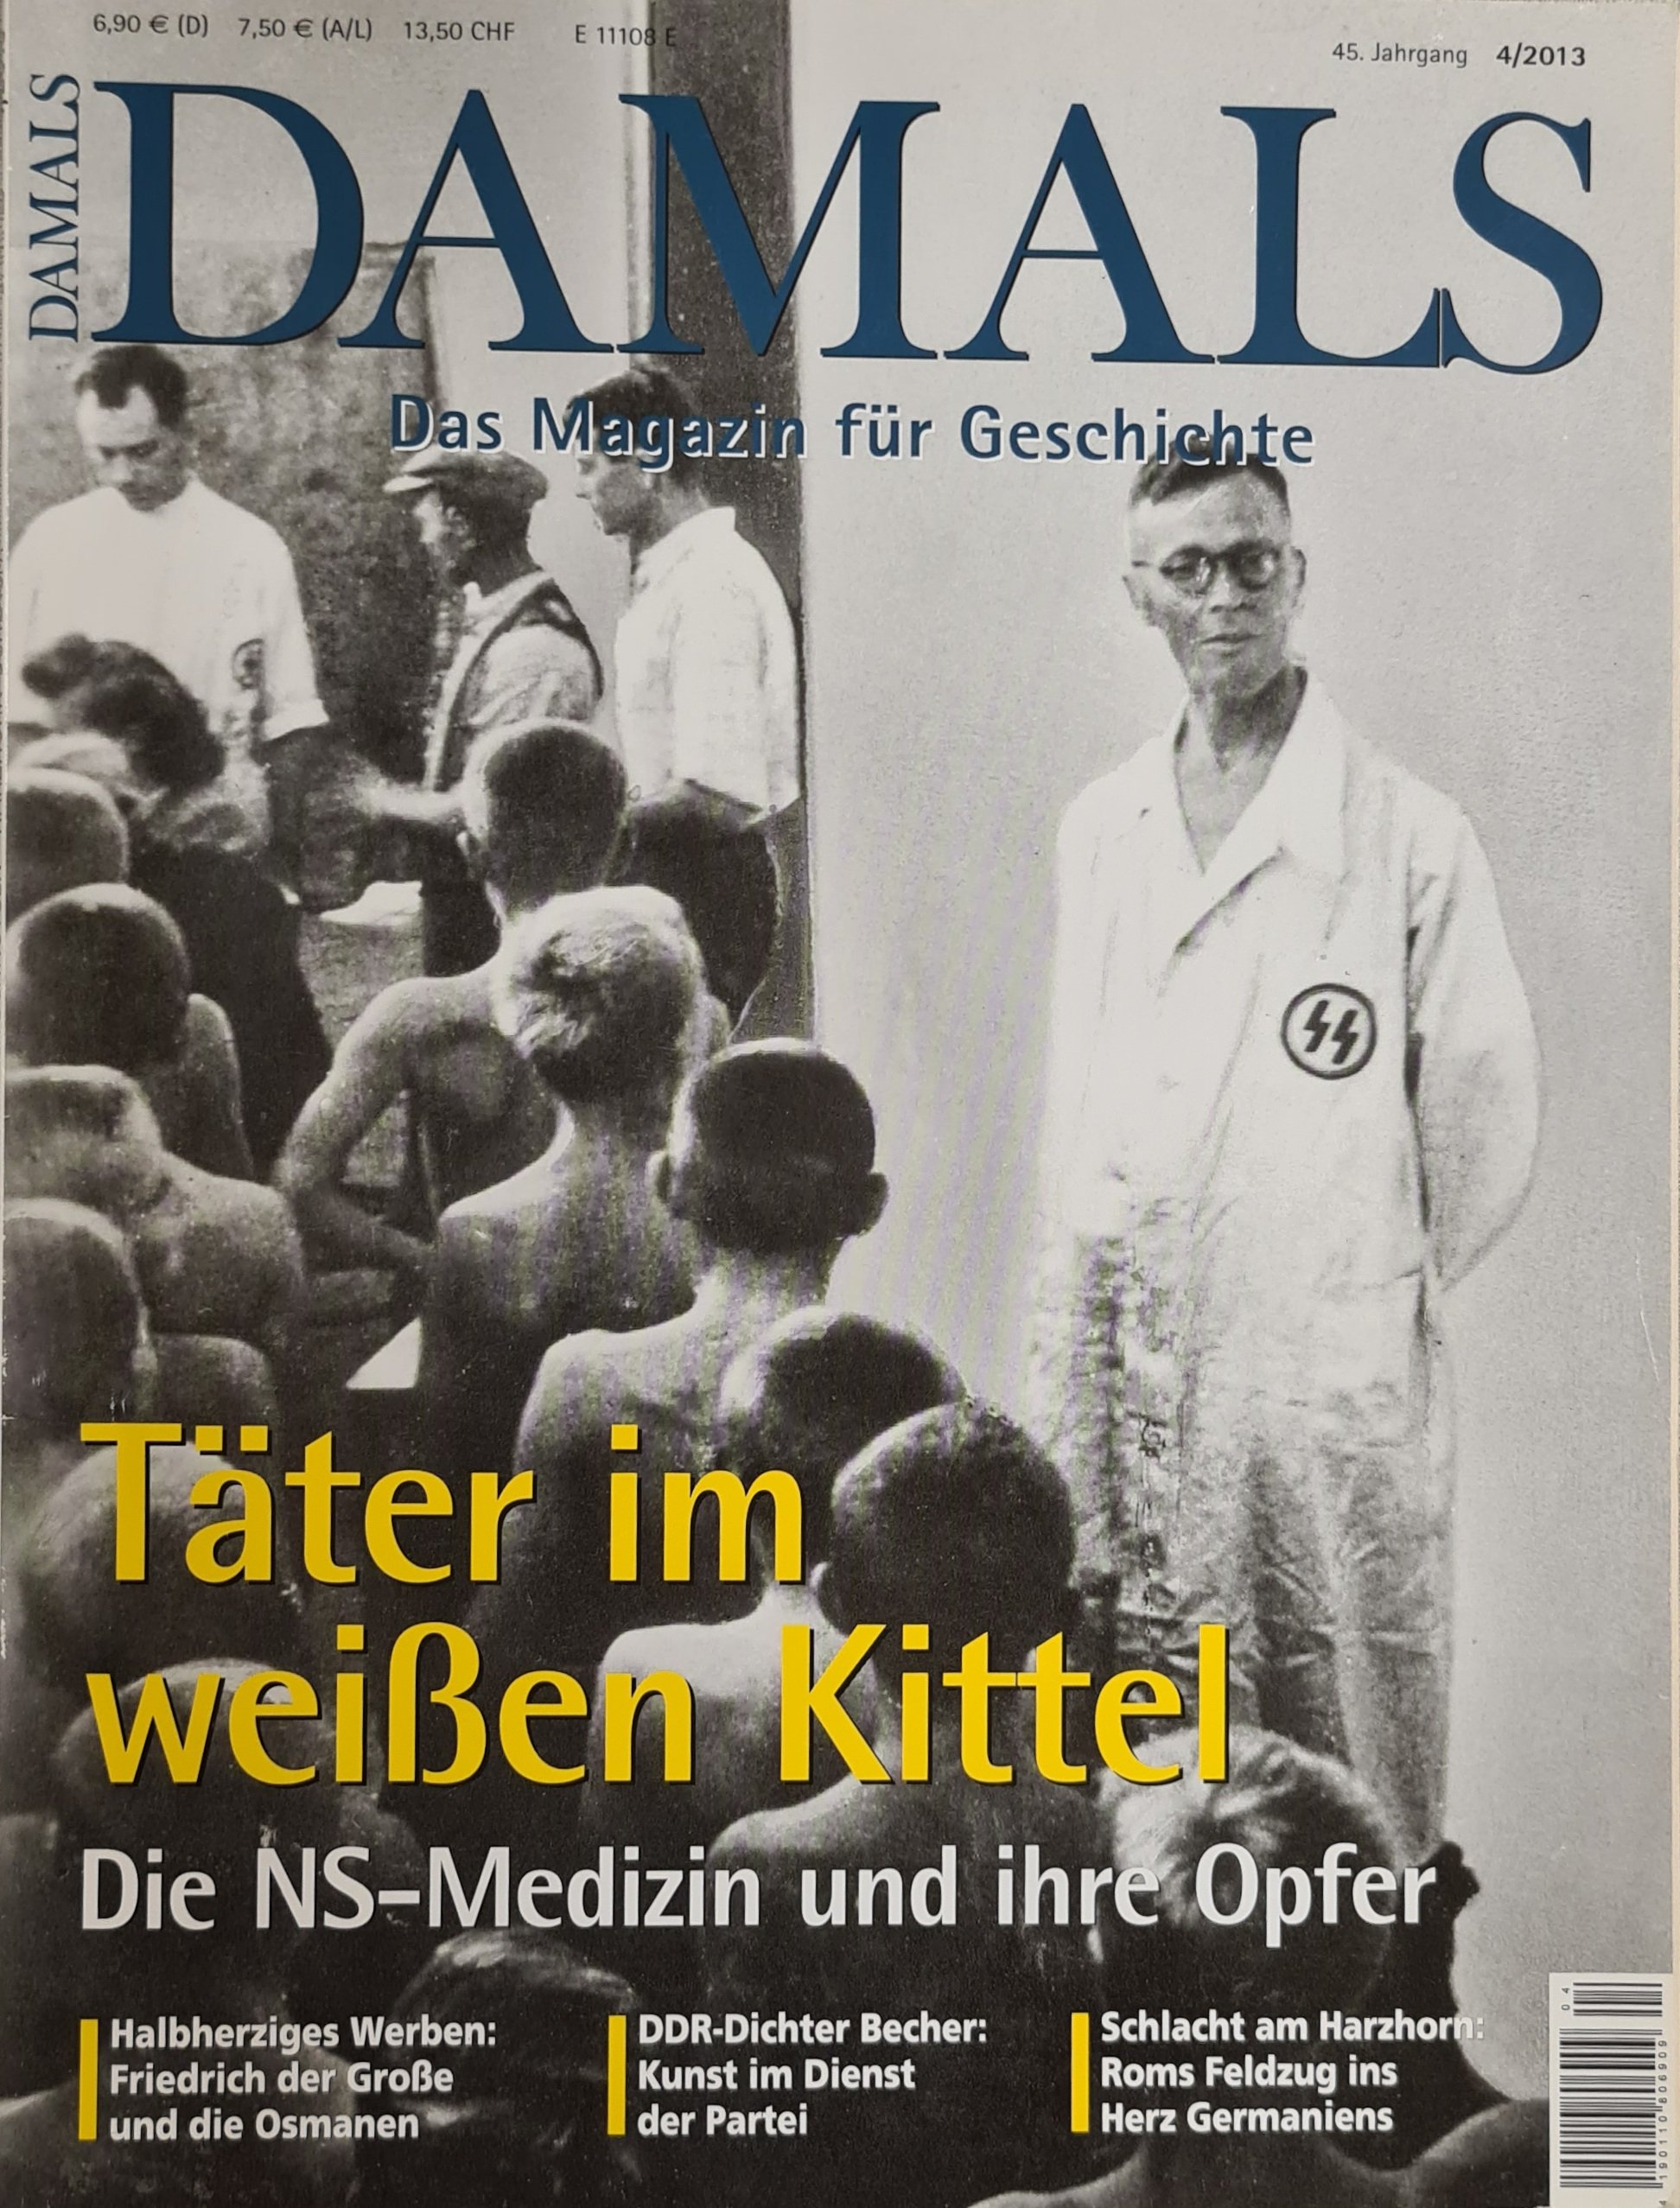 Damals - Das Magazin für Geschichte: Täter im weißen Kittel (Krankenhausmuseum Bielefeld e.V. CC BY-NC-SA)